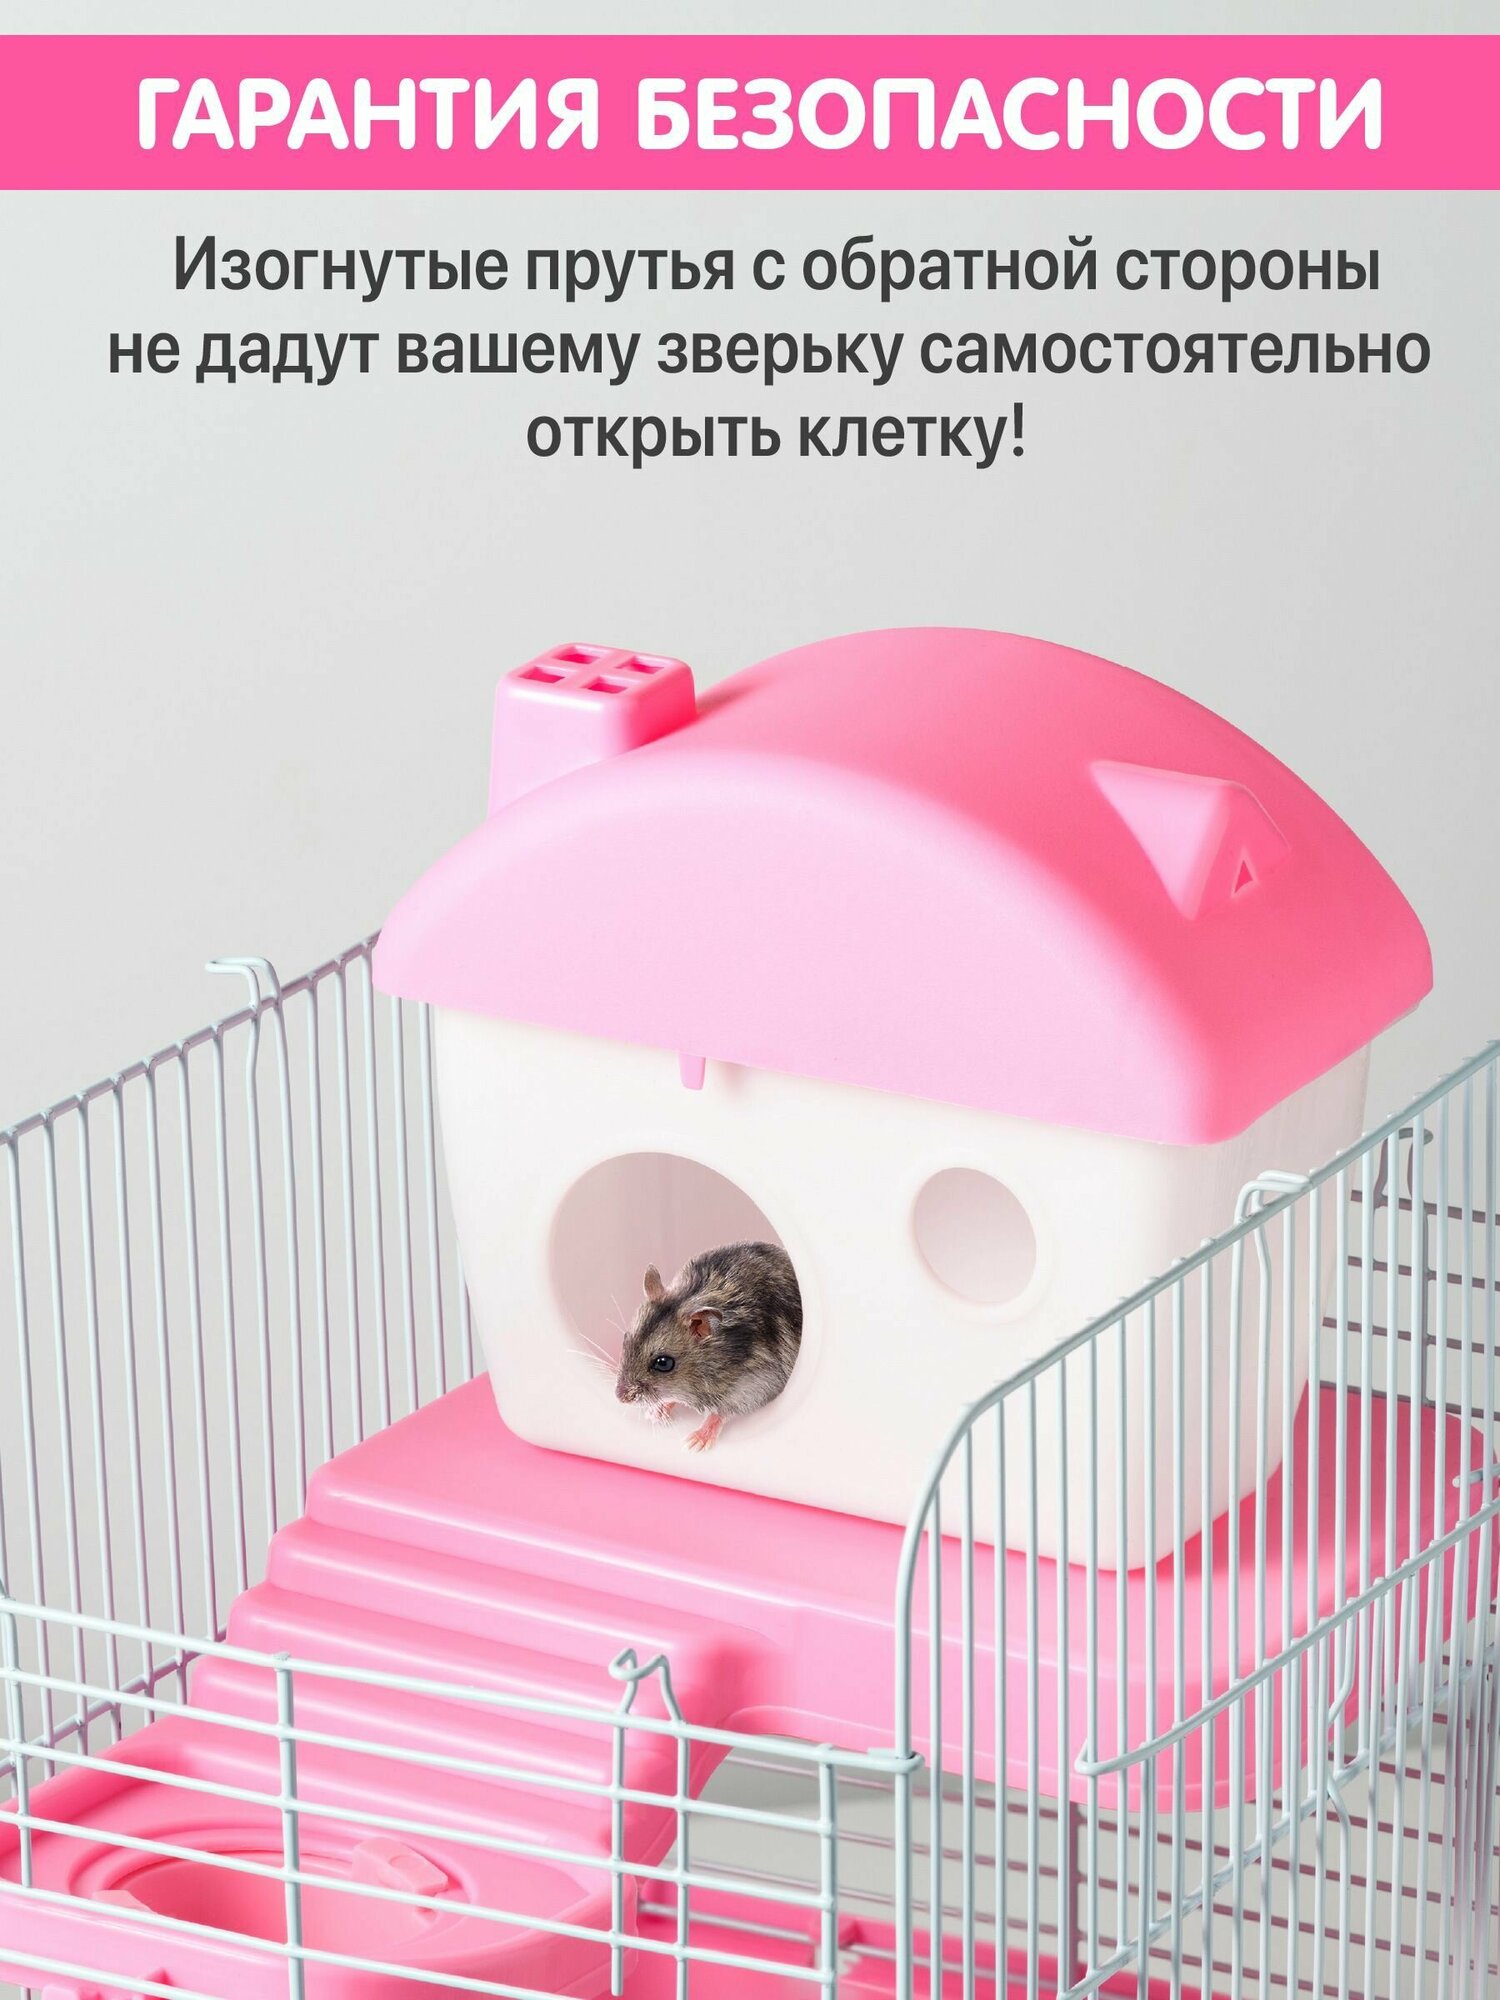 Клетка для хомяка джунгарского, мышей и мелких грызунов 23х17х31 см, SSY, розовая - фотография № 7